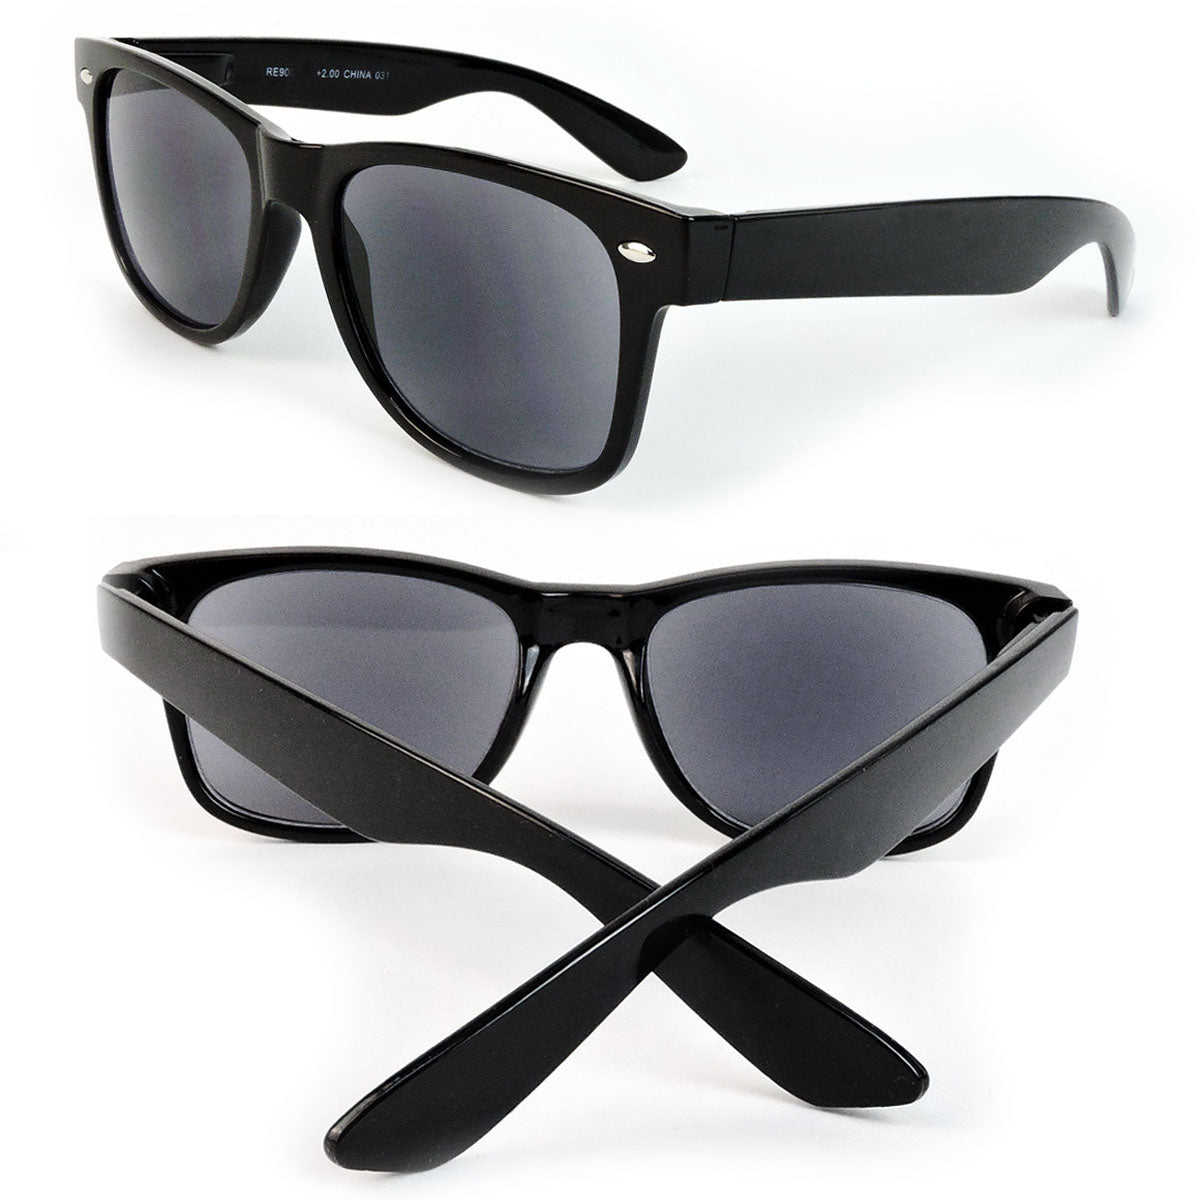 Sun Readers Full Lens Classic Frame 80's Retro Style Reading Sunglasses - Black, +2.50